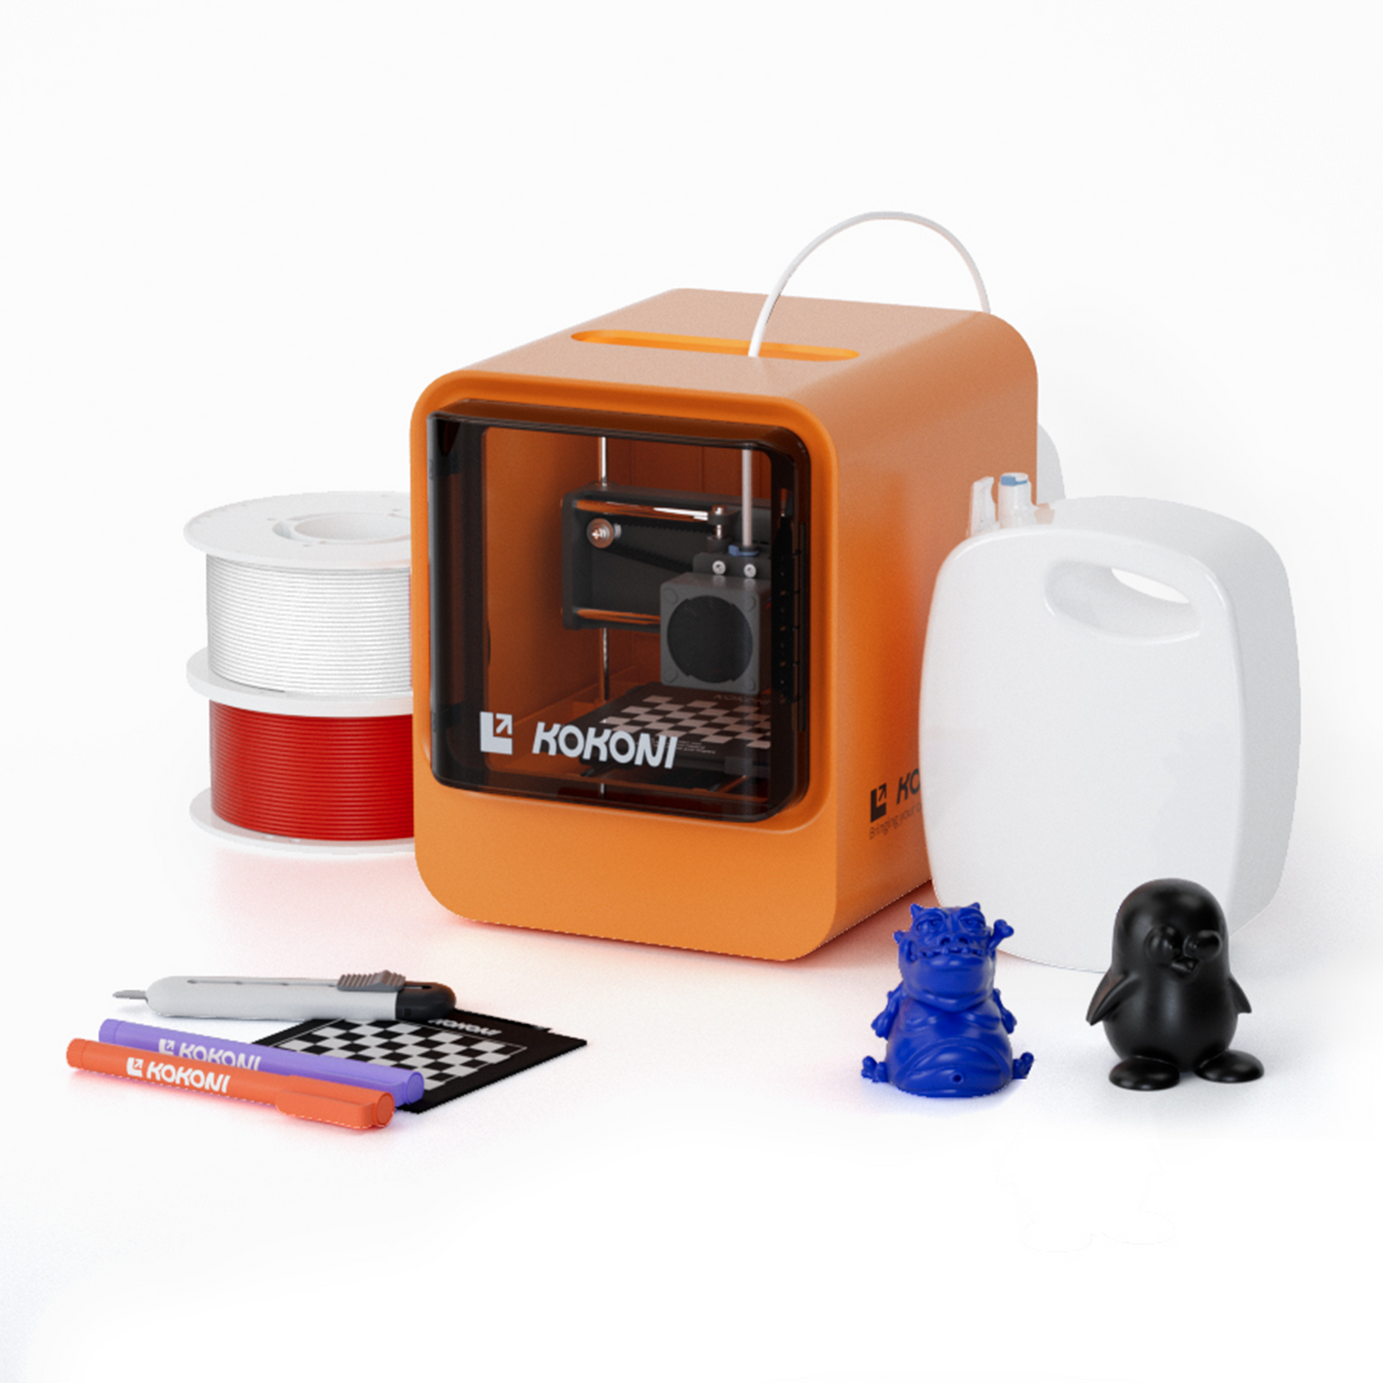 Deluxe Pack: KOKONI EC Series 3D Printer+ PLA Filaments+ Accessories